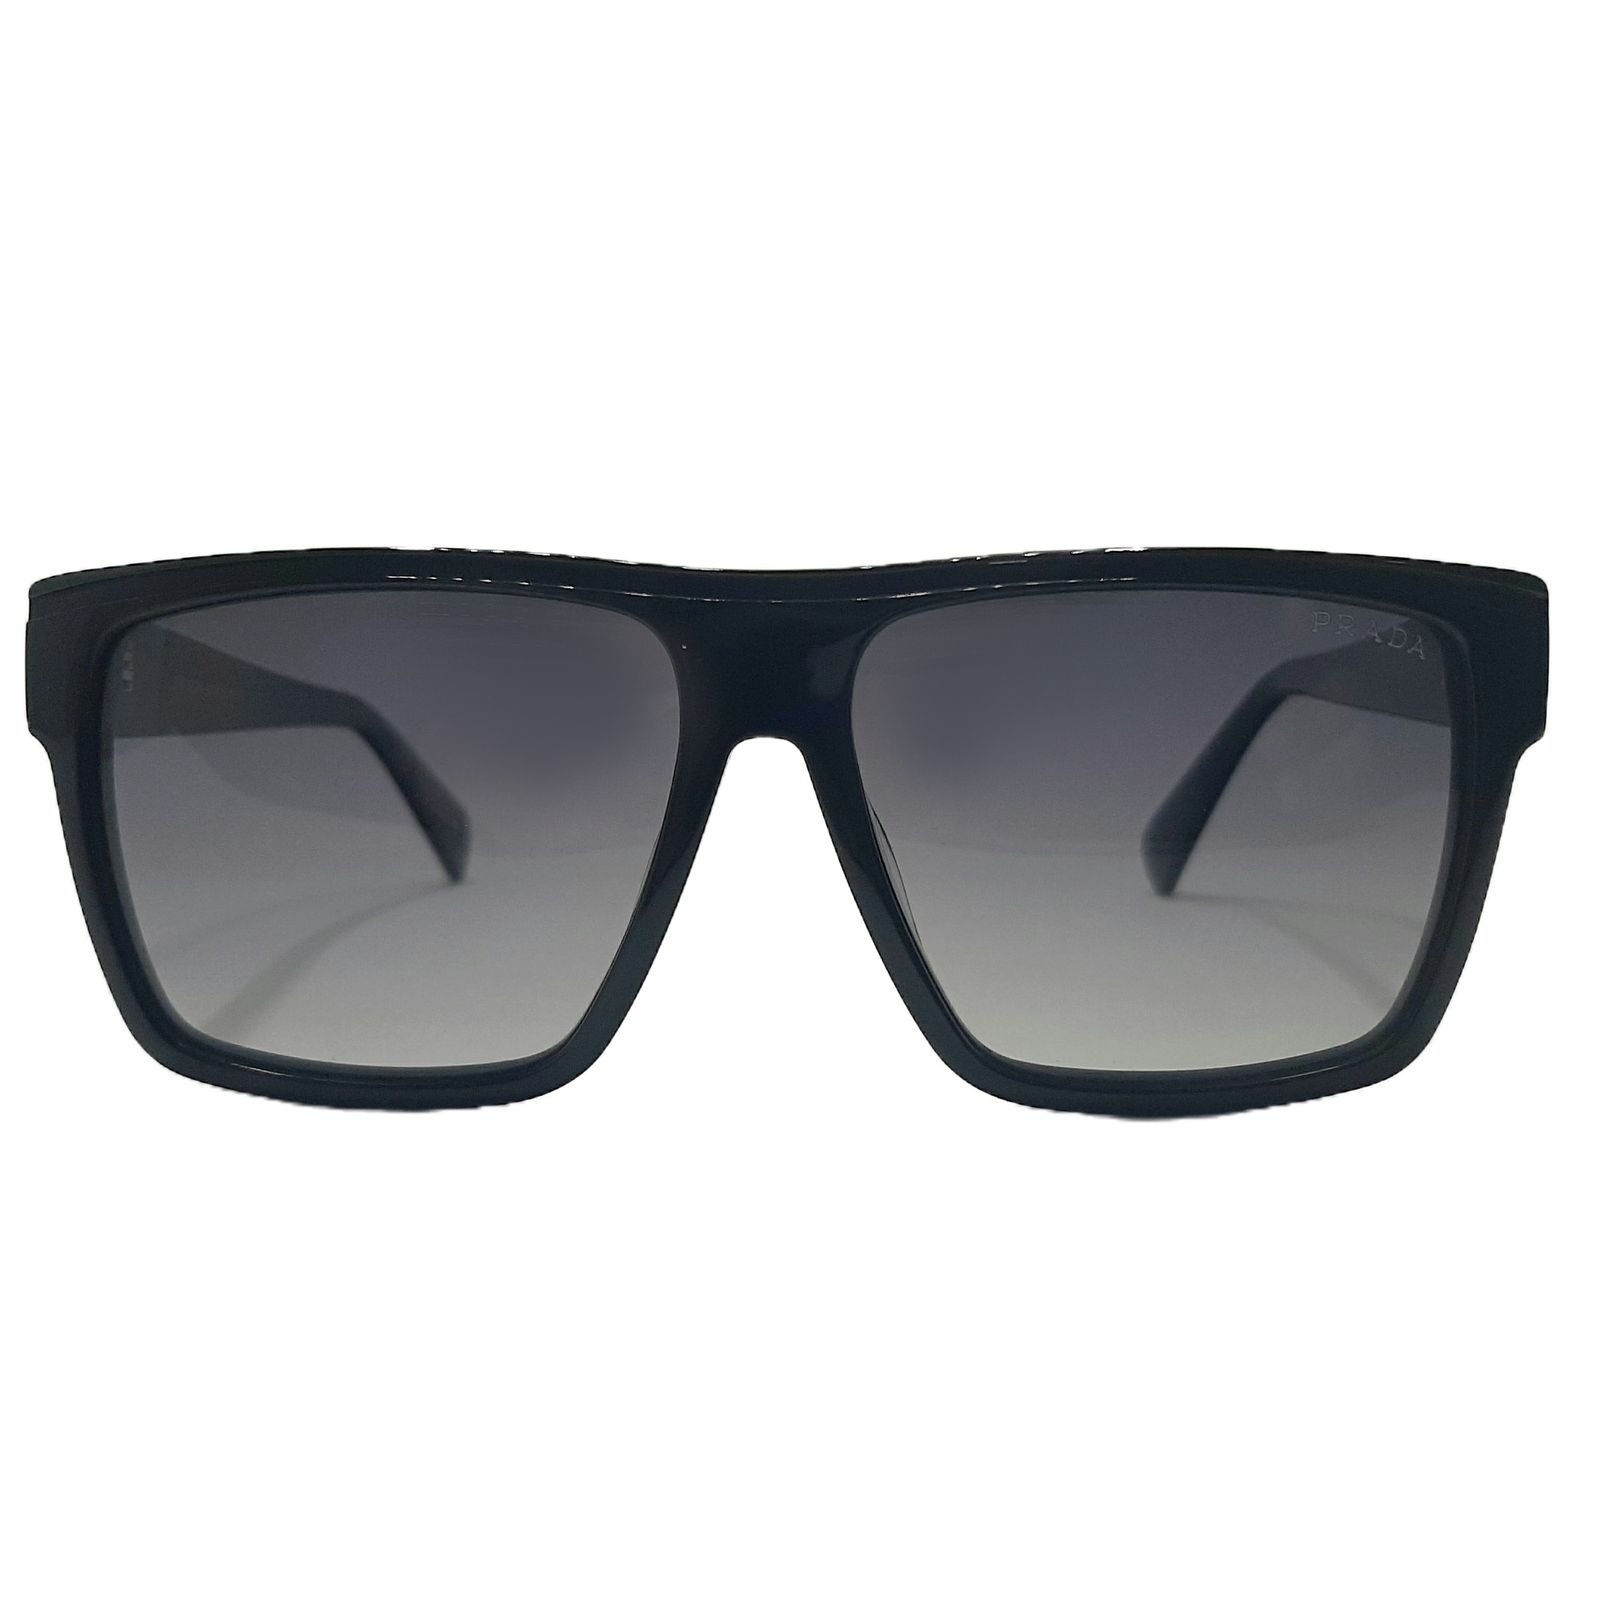 عینک آفتابی پرادا مدل VS8007c2 -  - 1